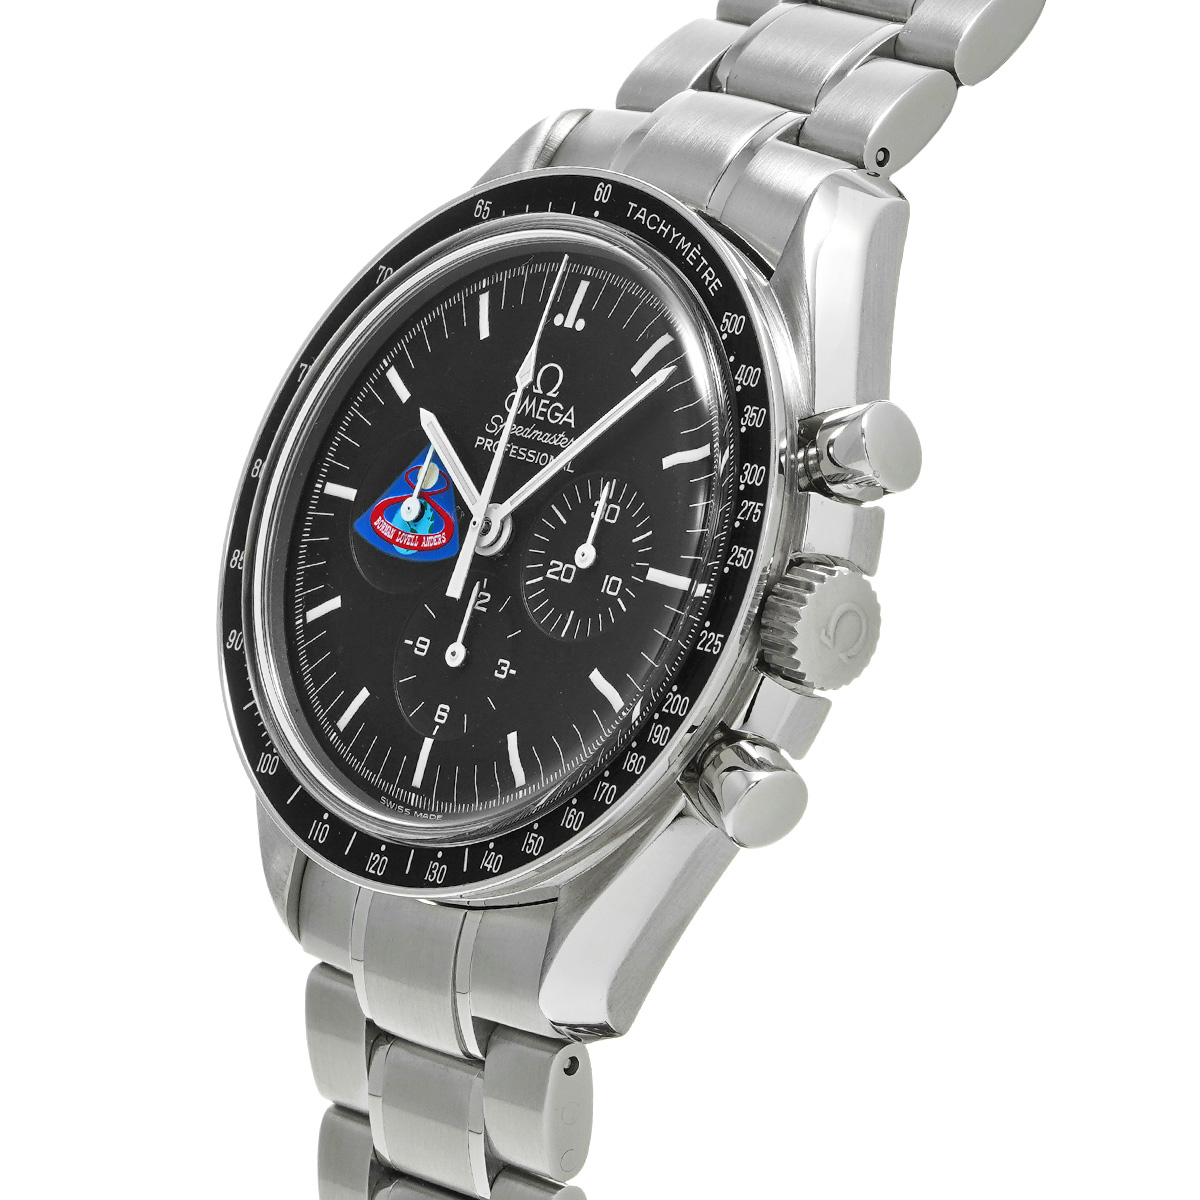 オメガ スピードマスター プロフェッショナル ミッションズ アポロ8号 3597.12 ブラック メンズ 時計 【中古】【wristwatch】